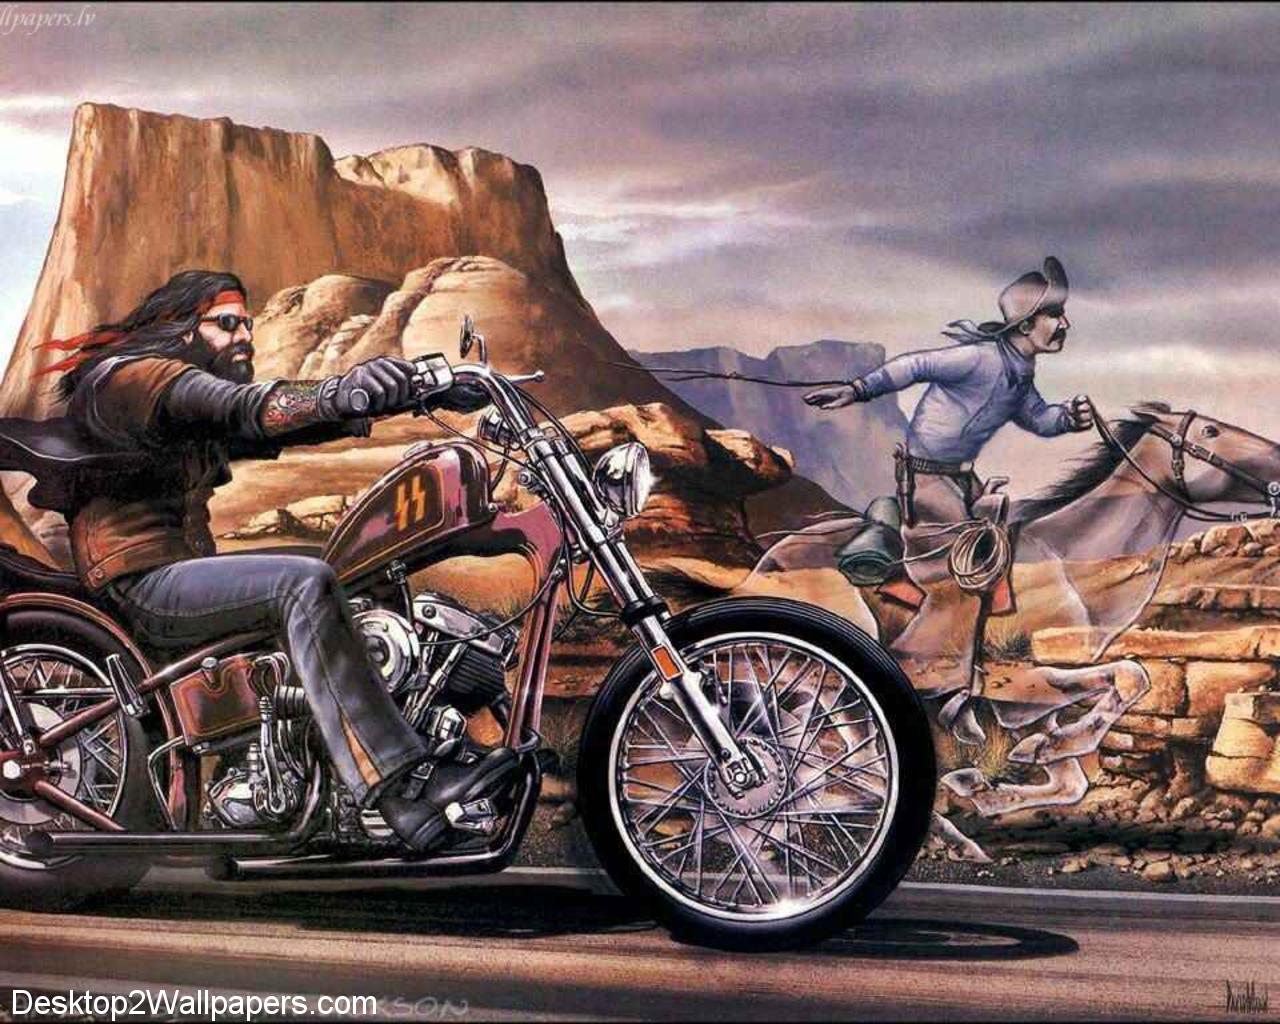 image For > Outlaw Biker Wallpaper